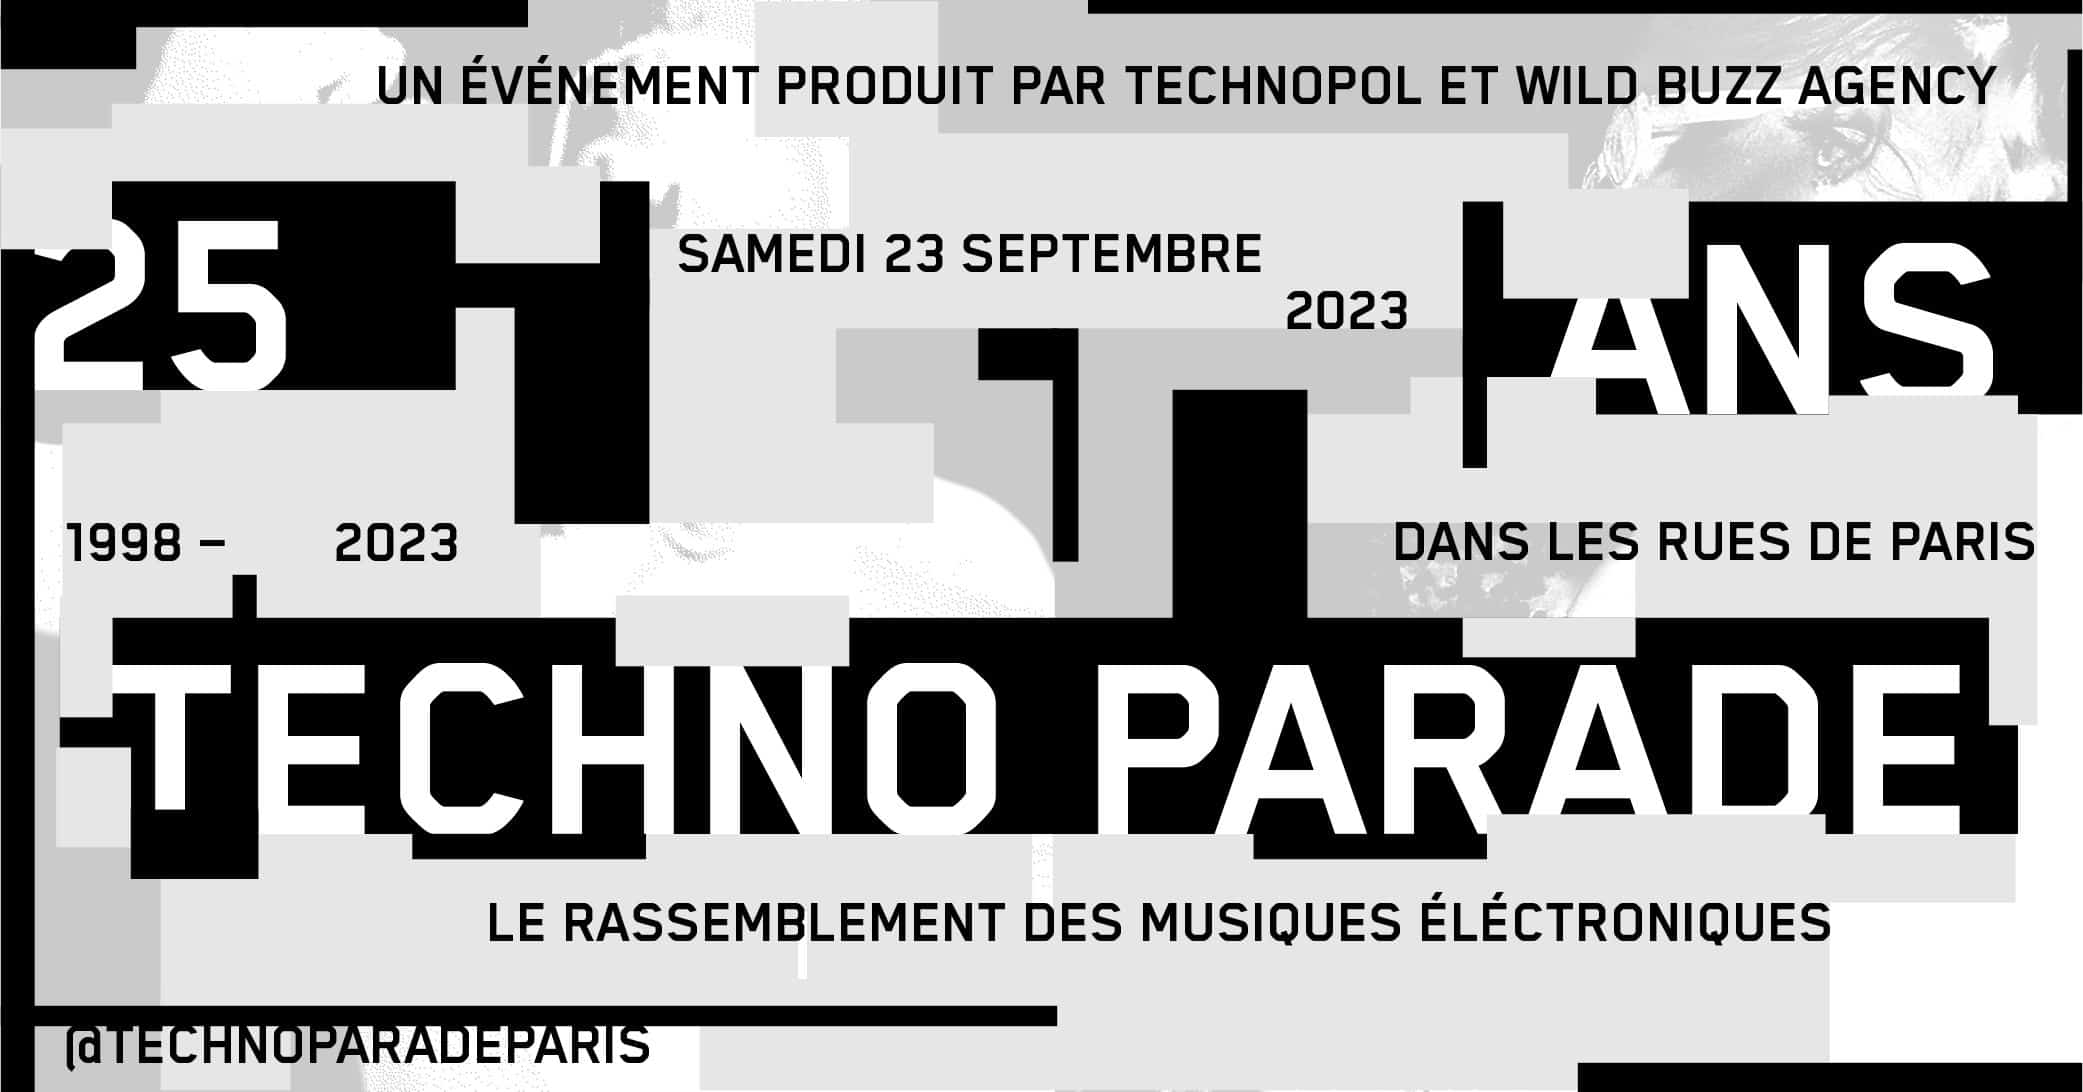 Techno Parade célèbre son 25e anniversaire avec une grande fête à la place de la Bastille